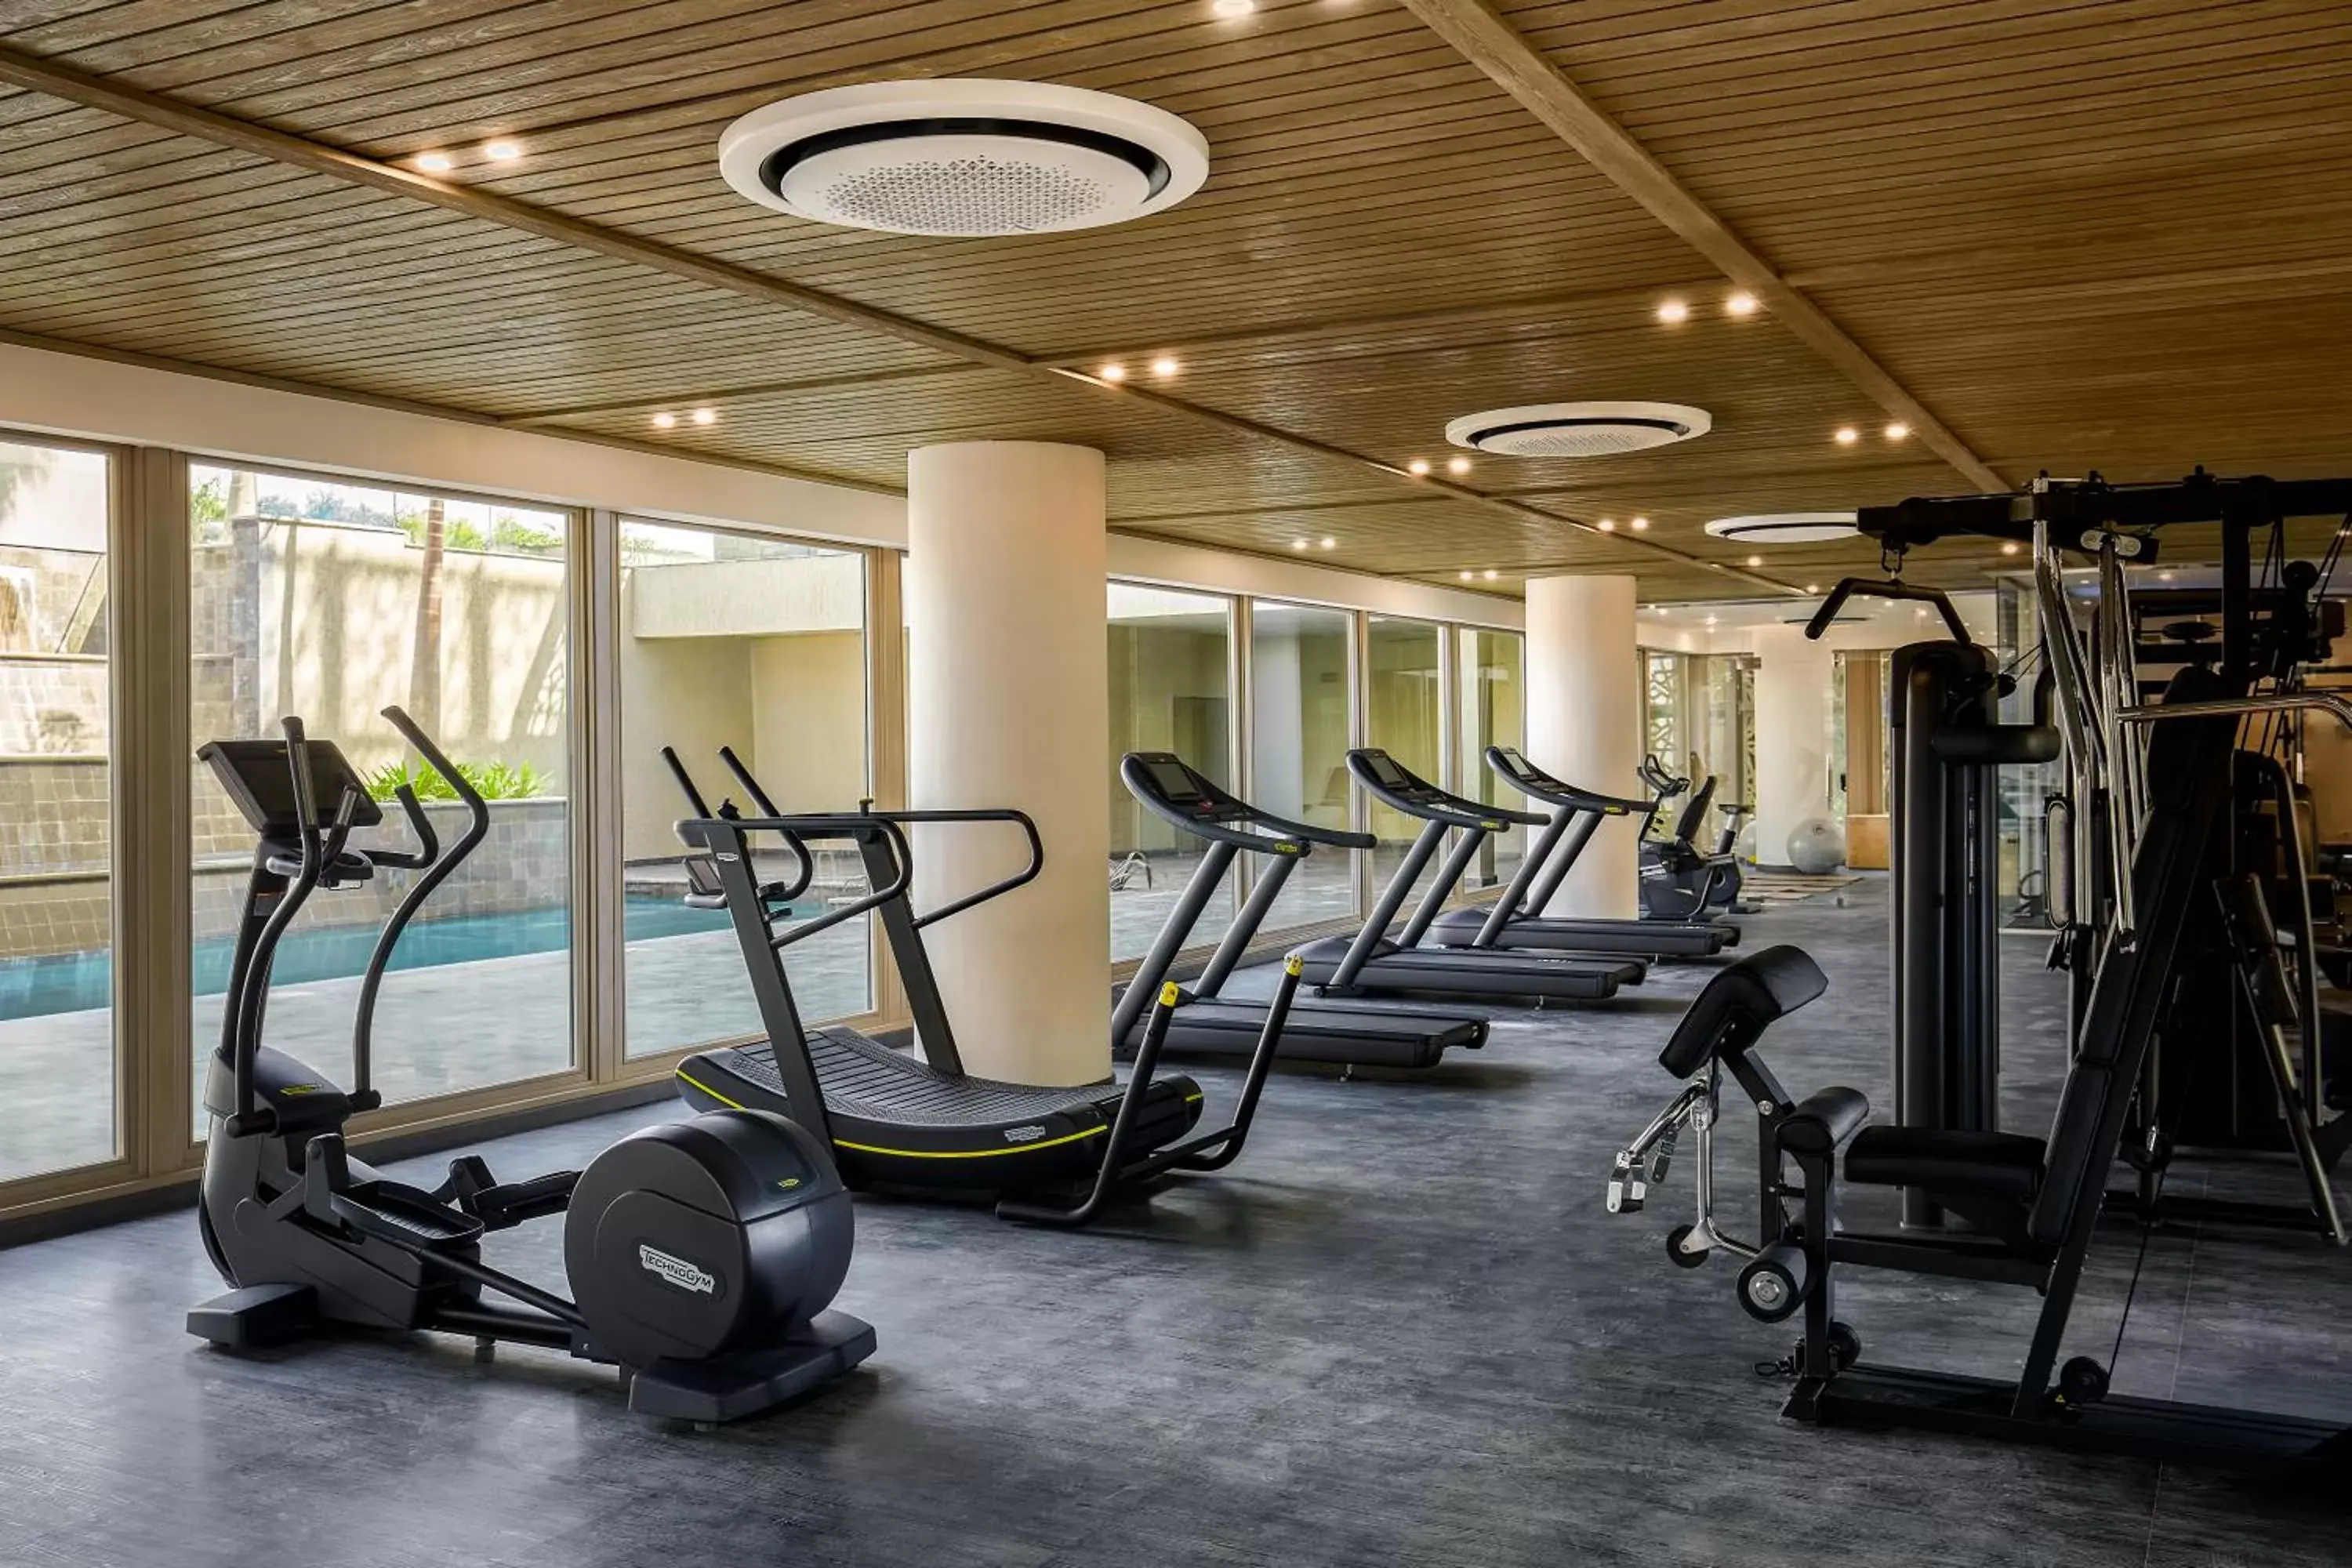 Fitness centre/facilities, Fitness Center/Facilities in Hyatt Regency Cairo West